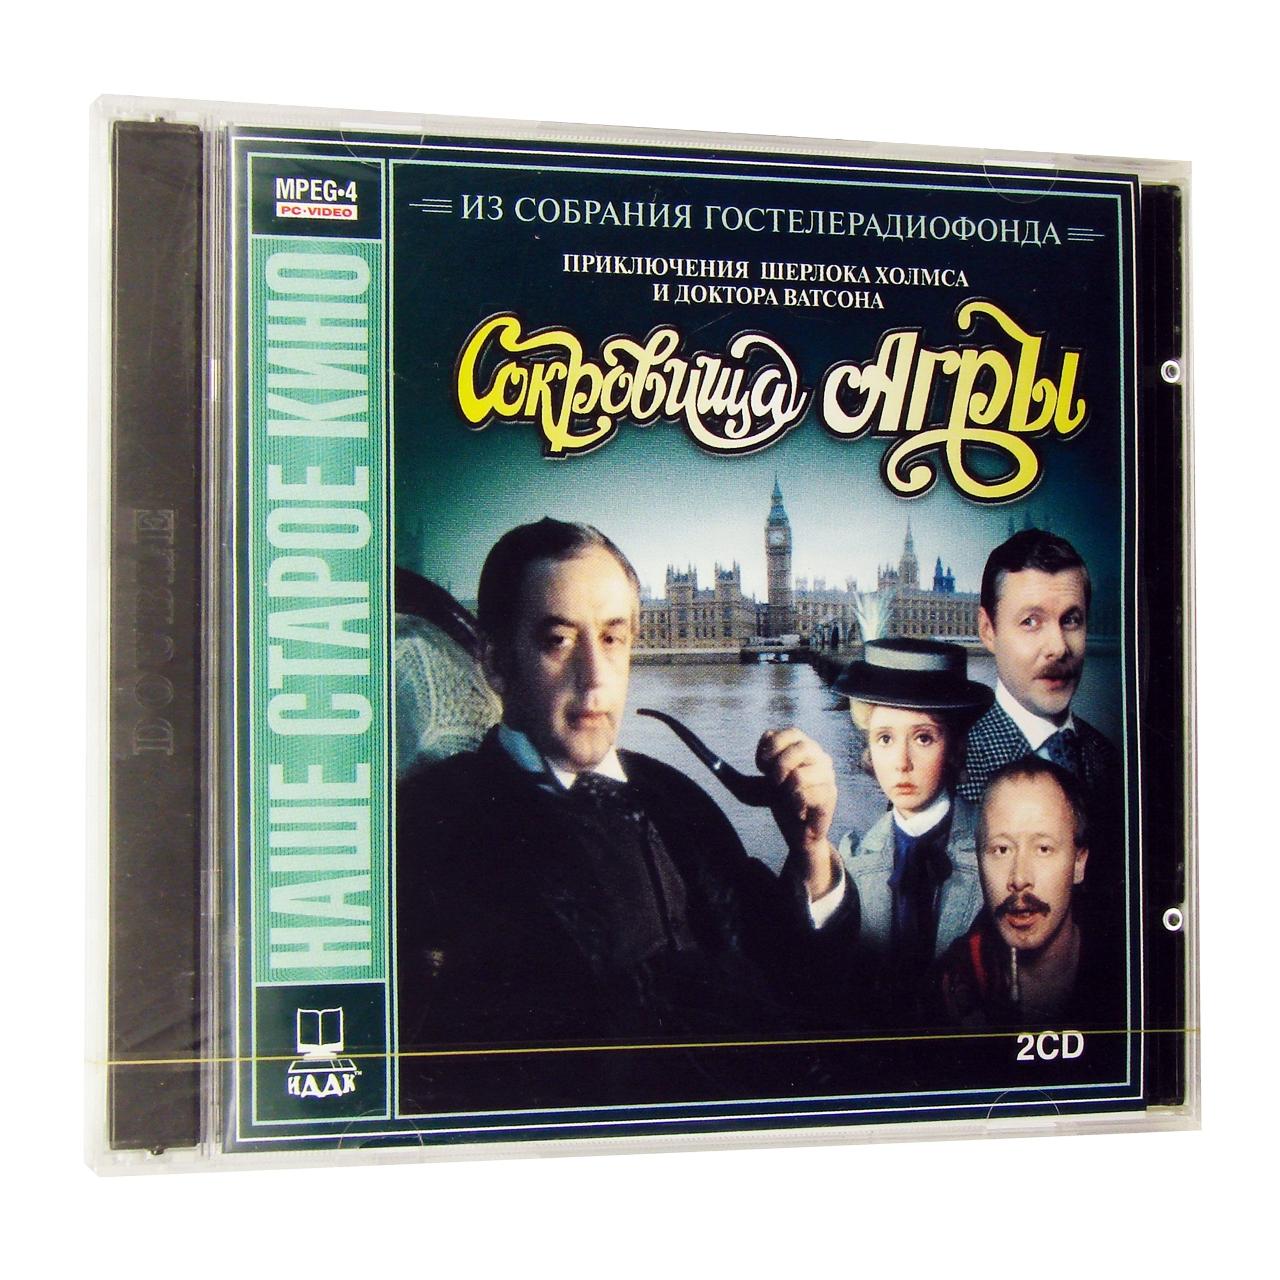 Компьютерный компакт-диск Сокровища Агры (ПК), фирма "Гостелерадиофонд", 1CD